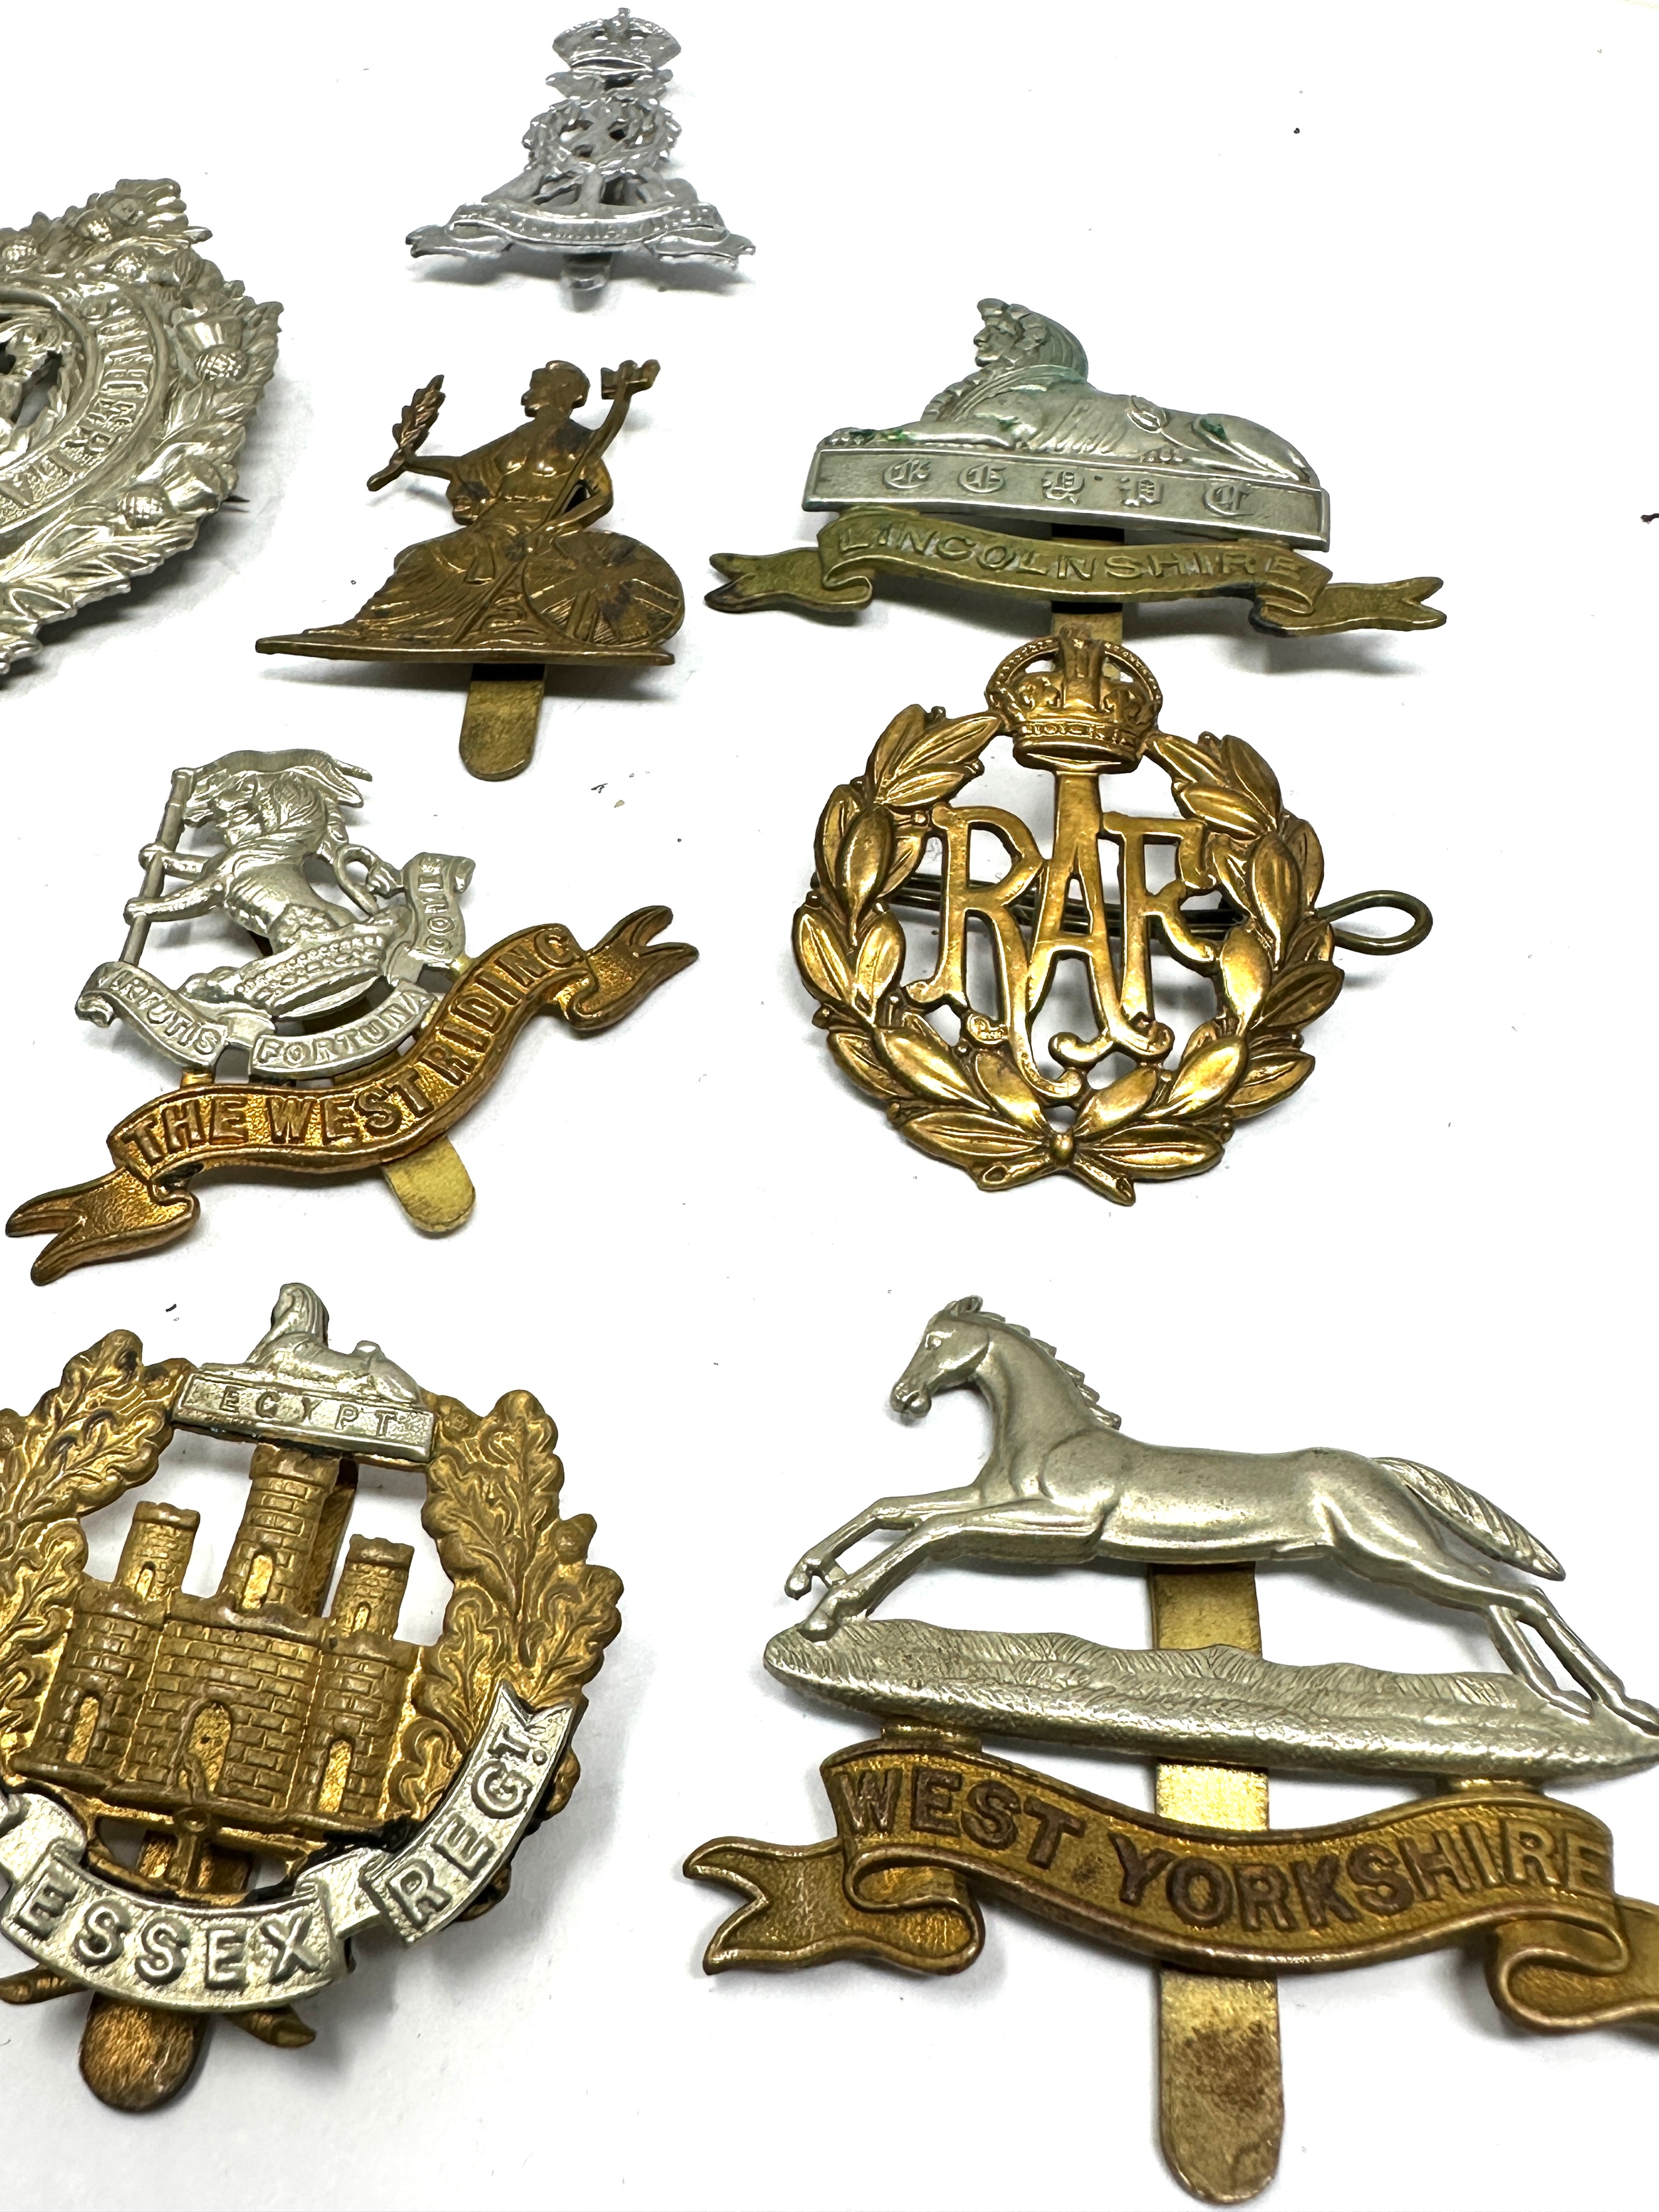 10 military cap badges inc lincolnshire -essex reg etc - Bild 3 aus 3